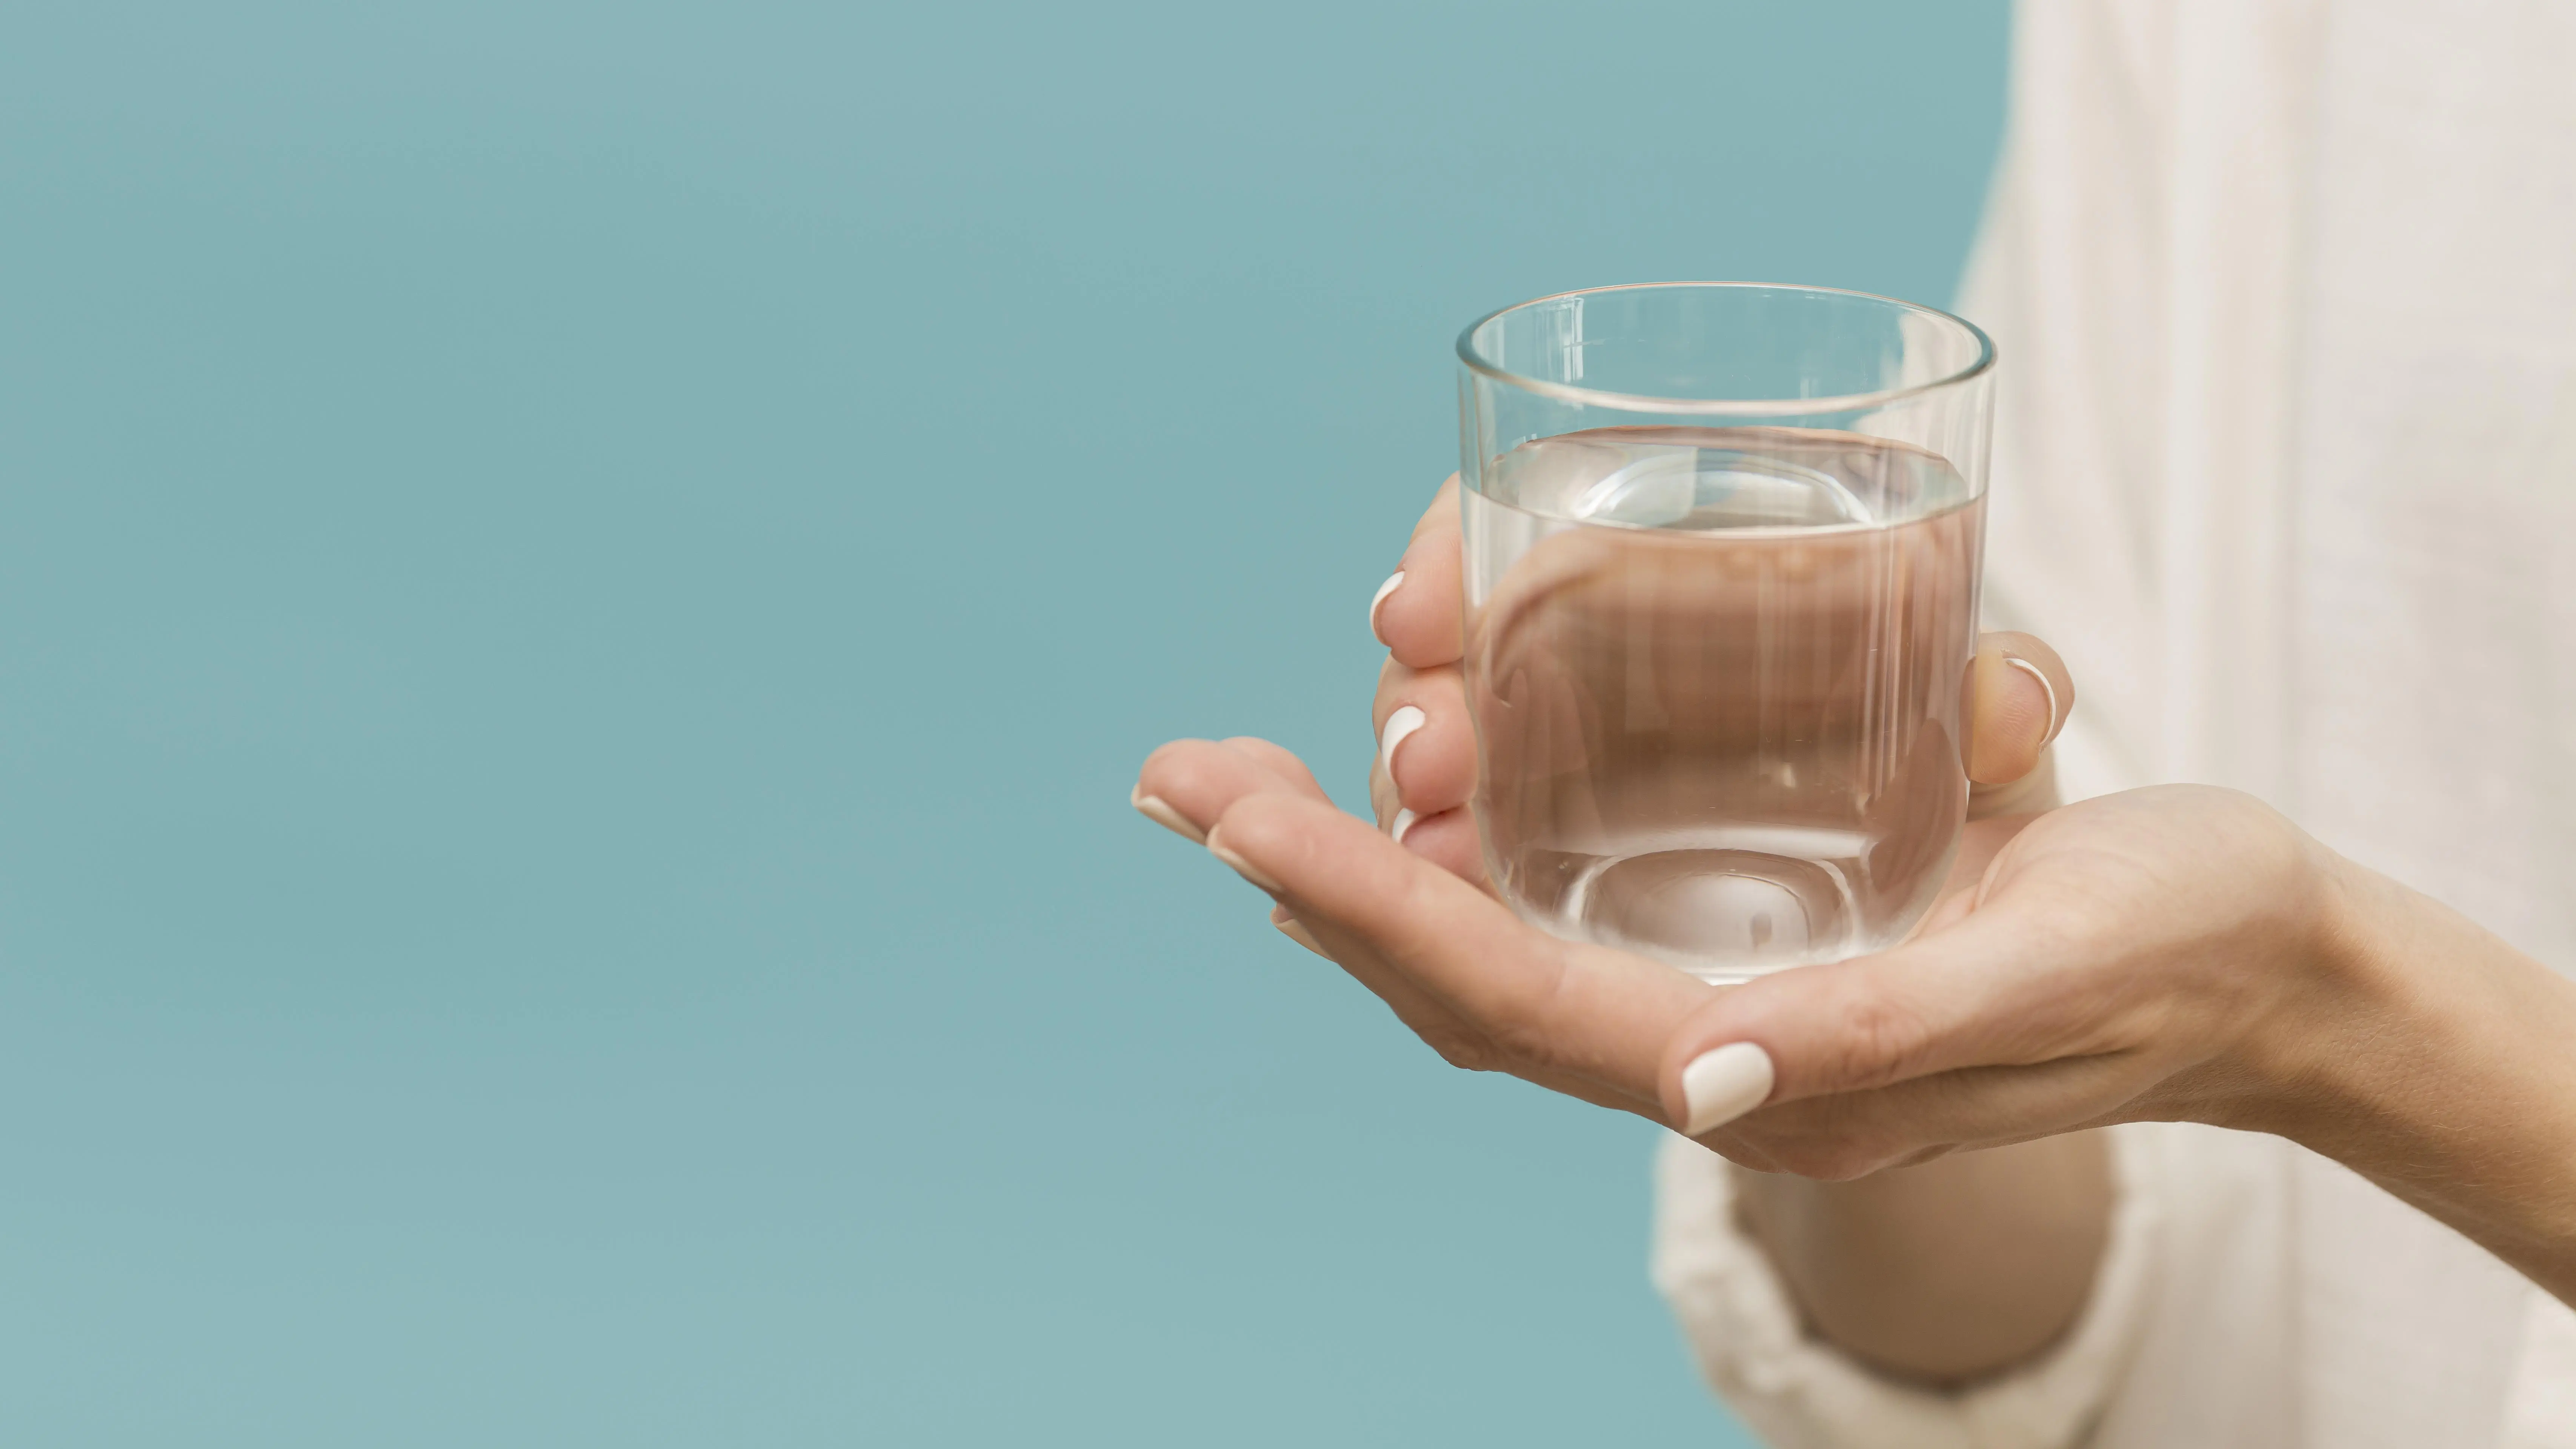 Harus Berapa Gelas Minum Air Putih Diminum Saat Puasa?